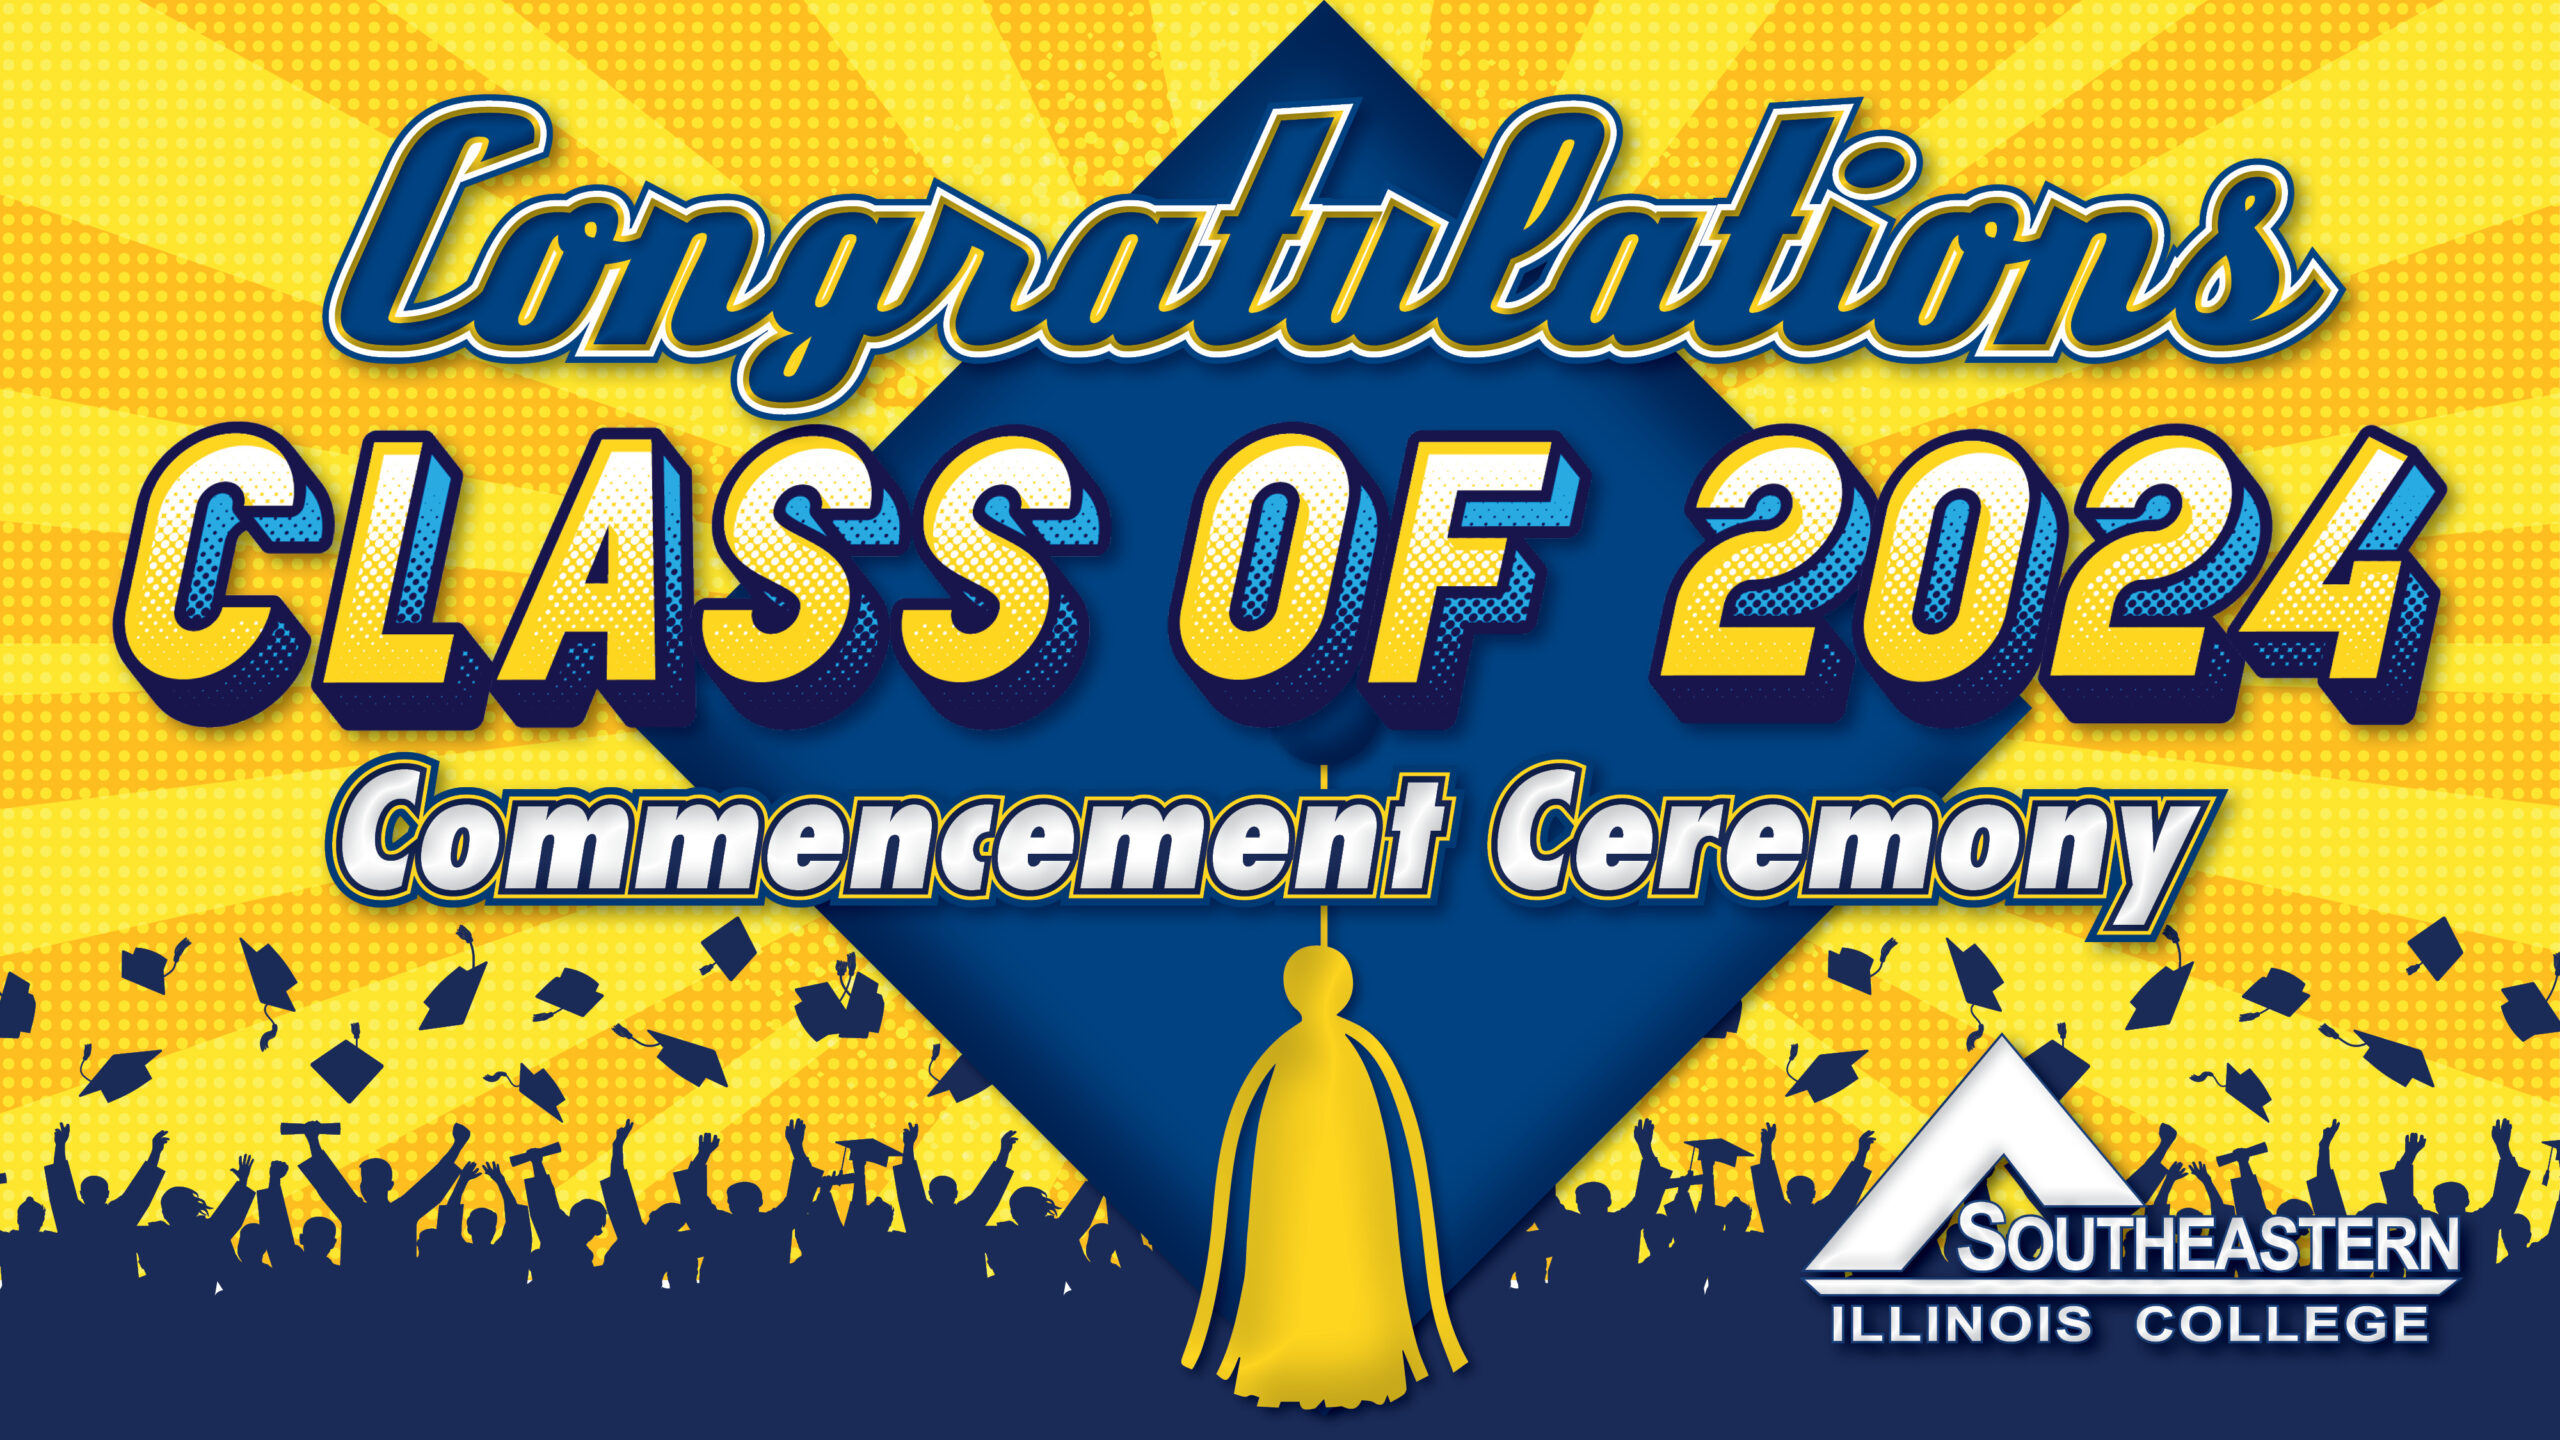 Congratulations, Graduates!